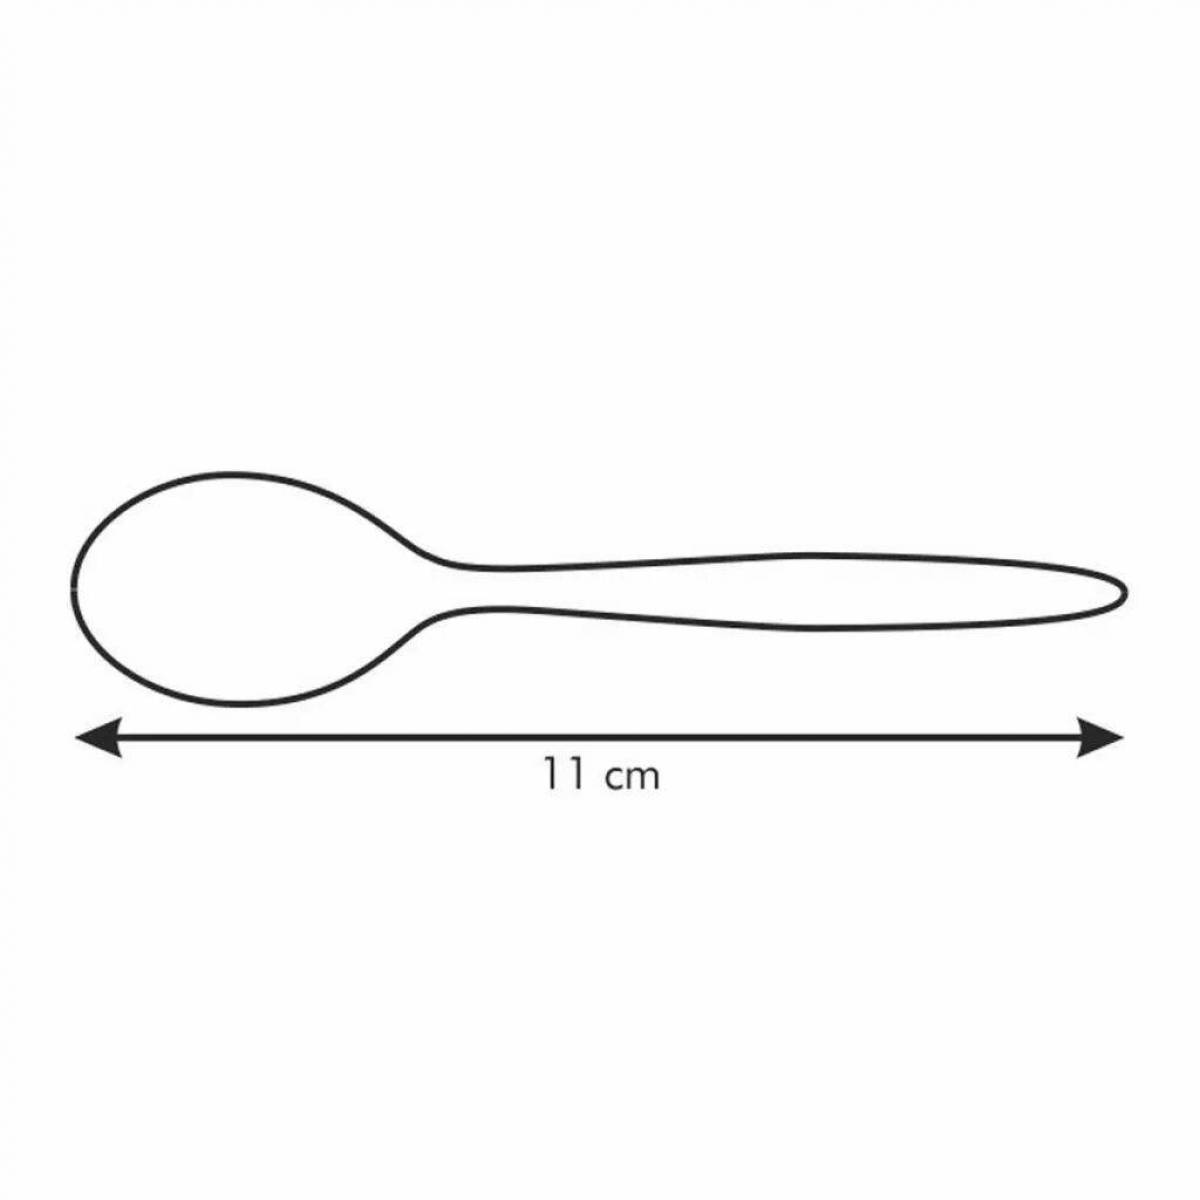 Children's wooden spoon #4